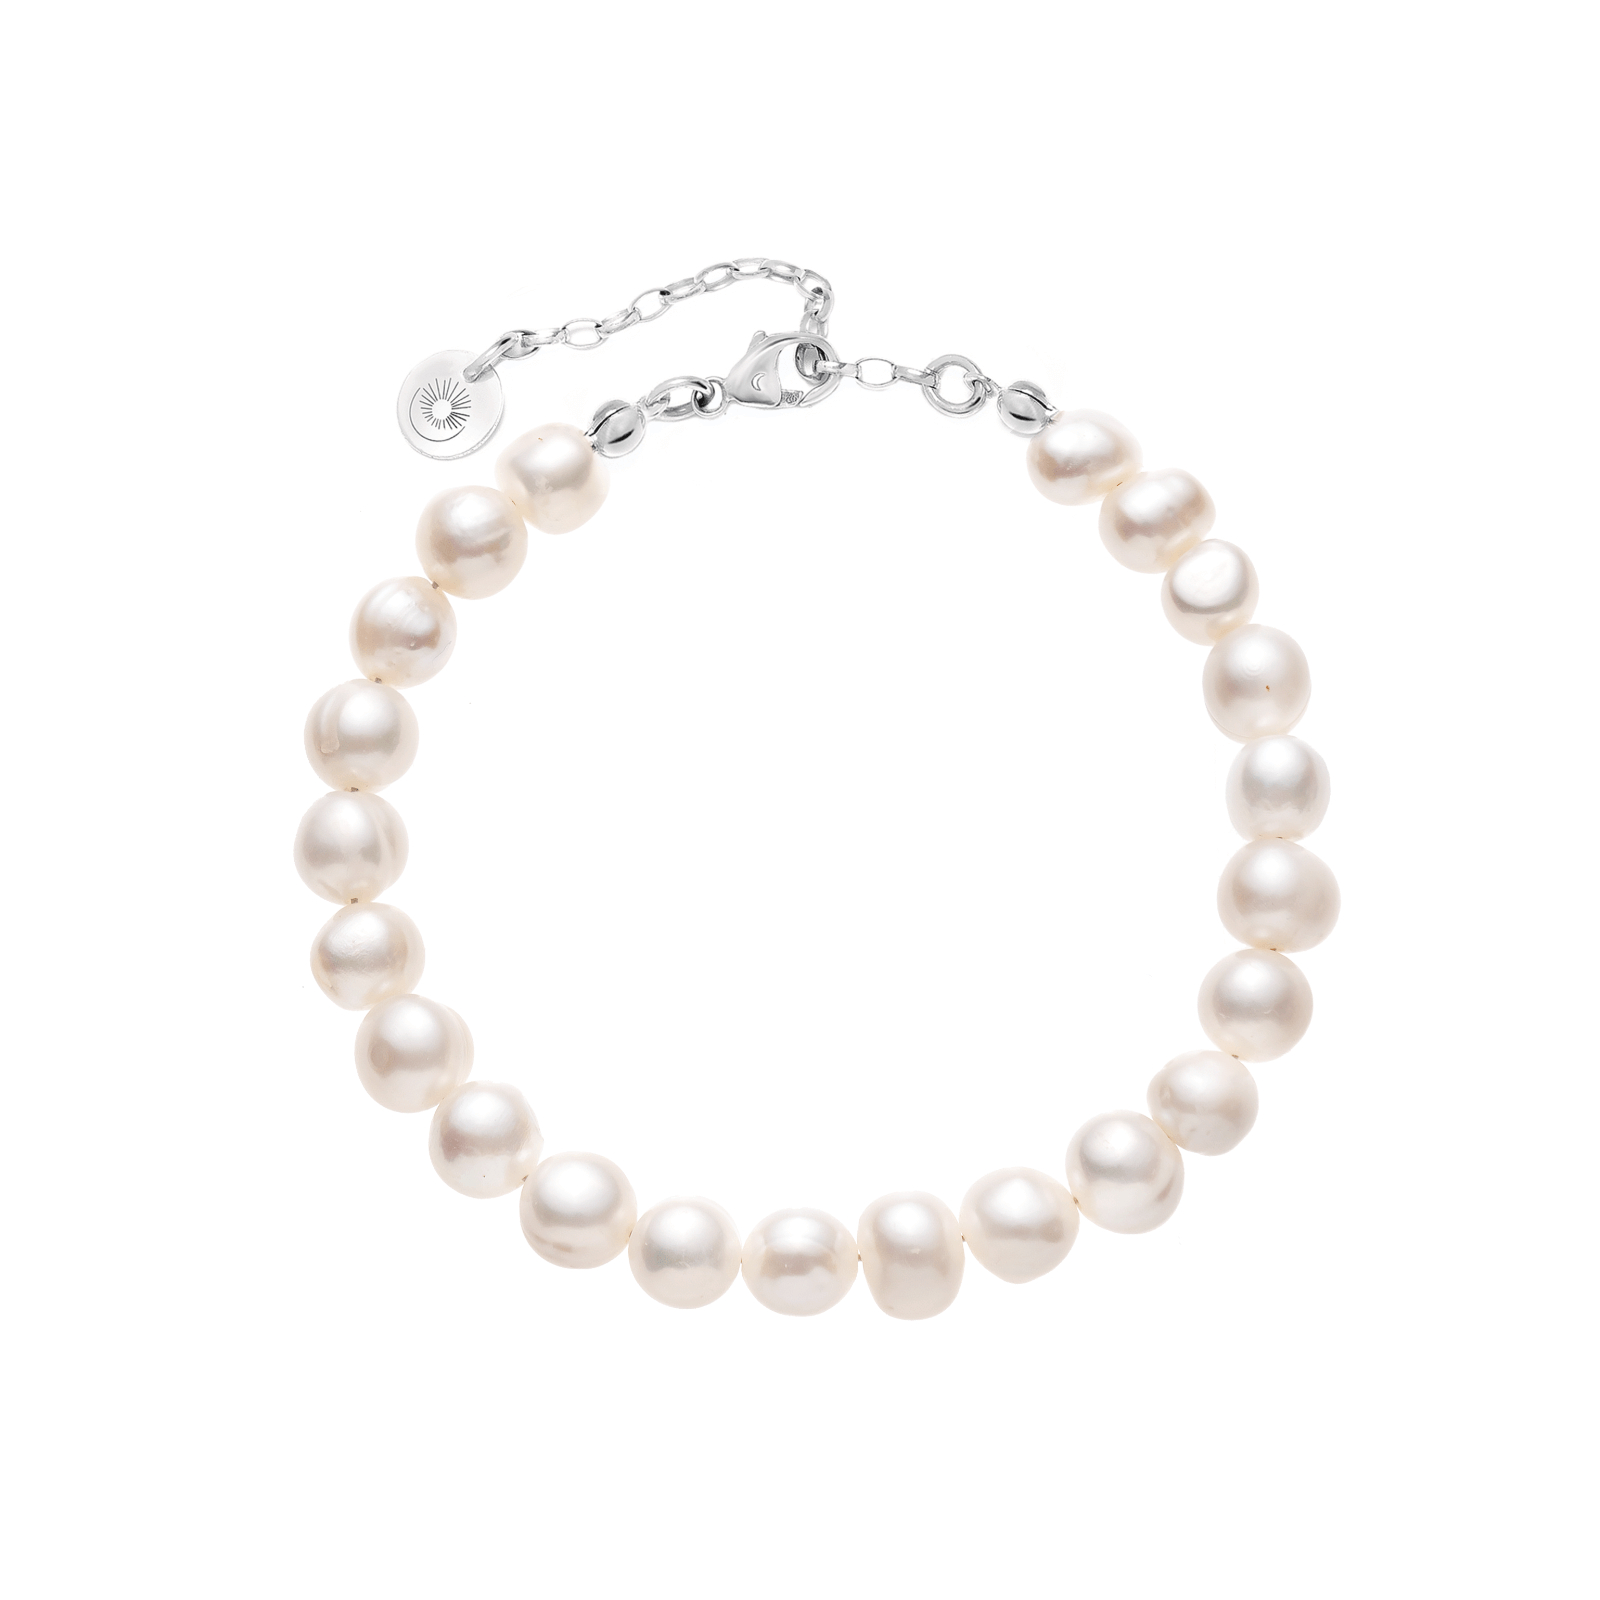 A pearl bracelet on a light background.